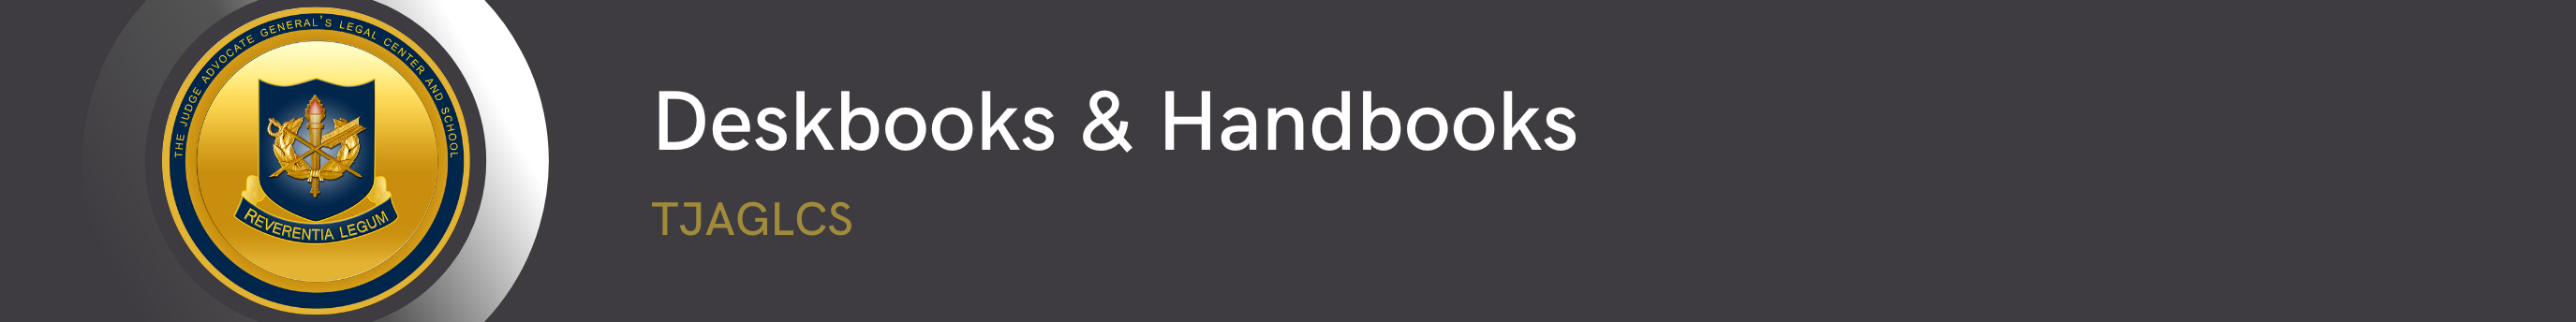 Deskbooks & Handbooks Banner